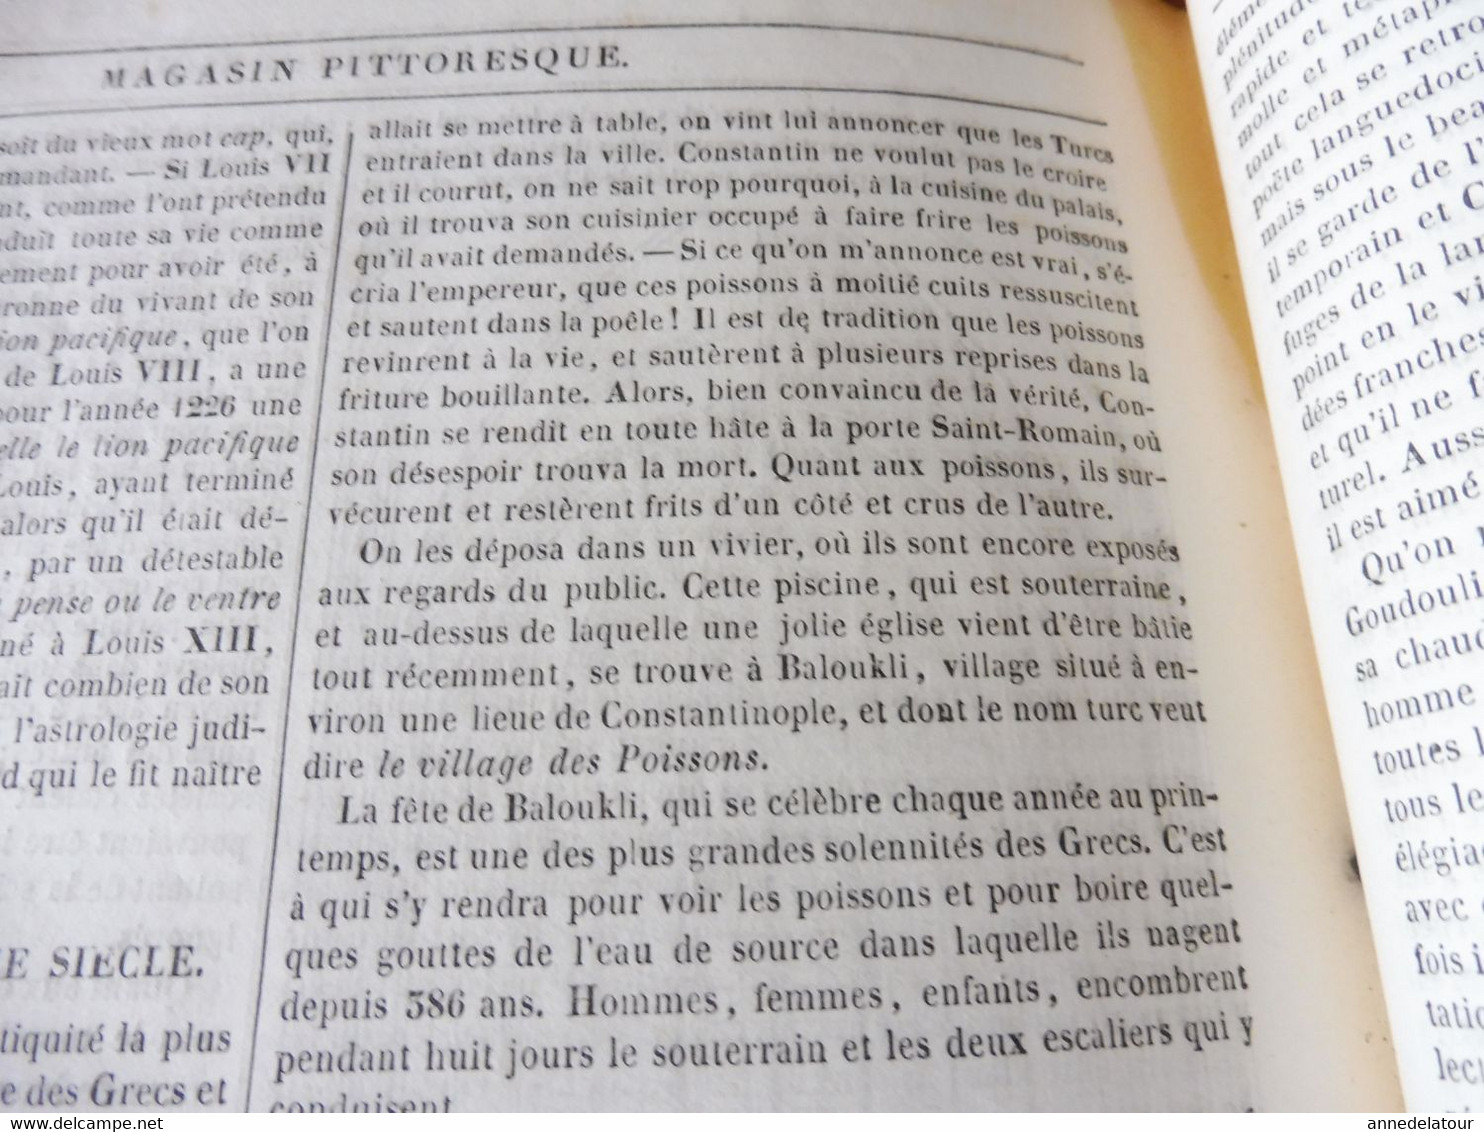 1839 MP Cathédrale de Chartres; Fête de Baloukli ;Goudouli poète du Languedoc; Bataille de Granson; Charles le Téméraire